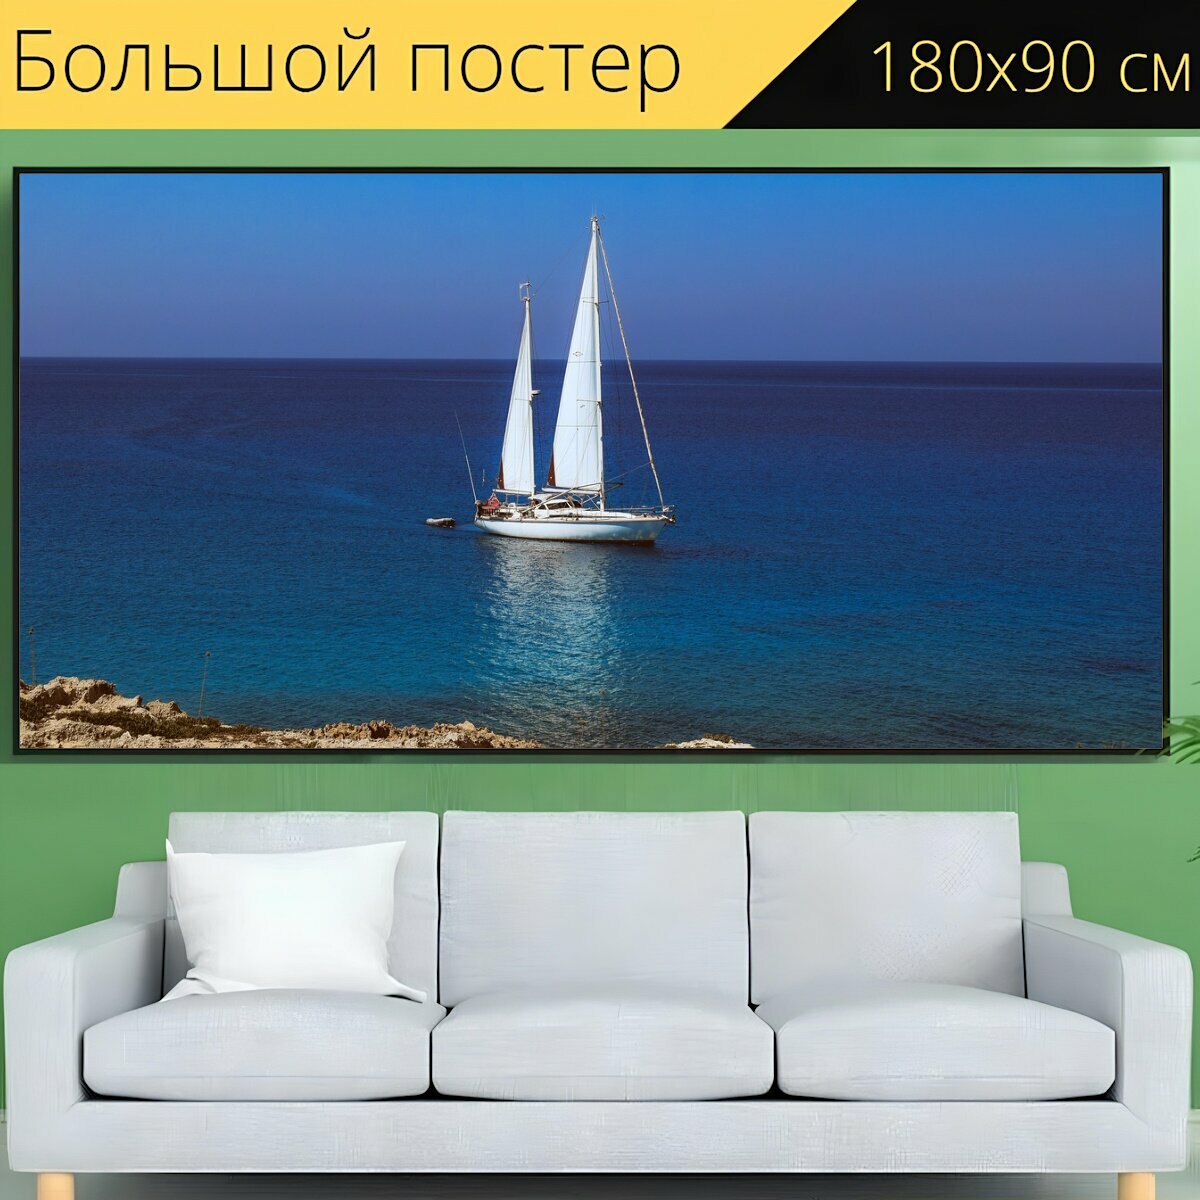 Большой постер "Парусное судно, лодка, море" 180 x 90 см. для интерьера